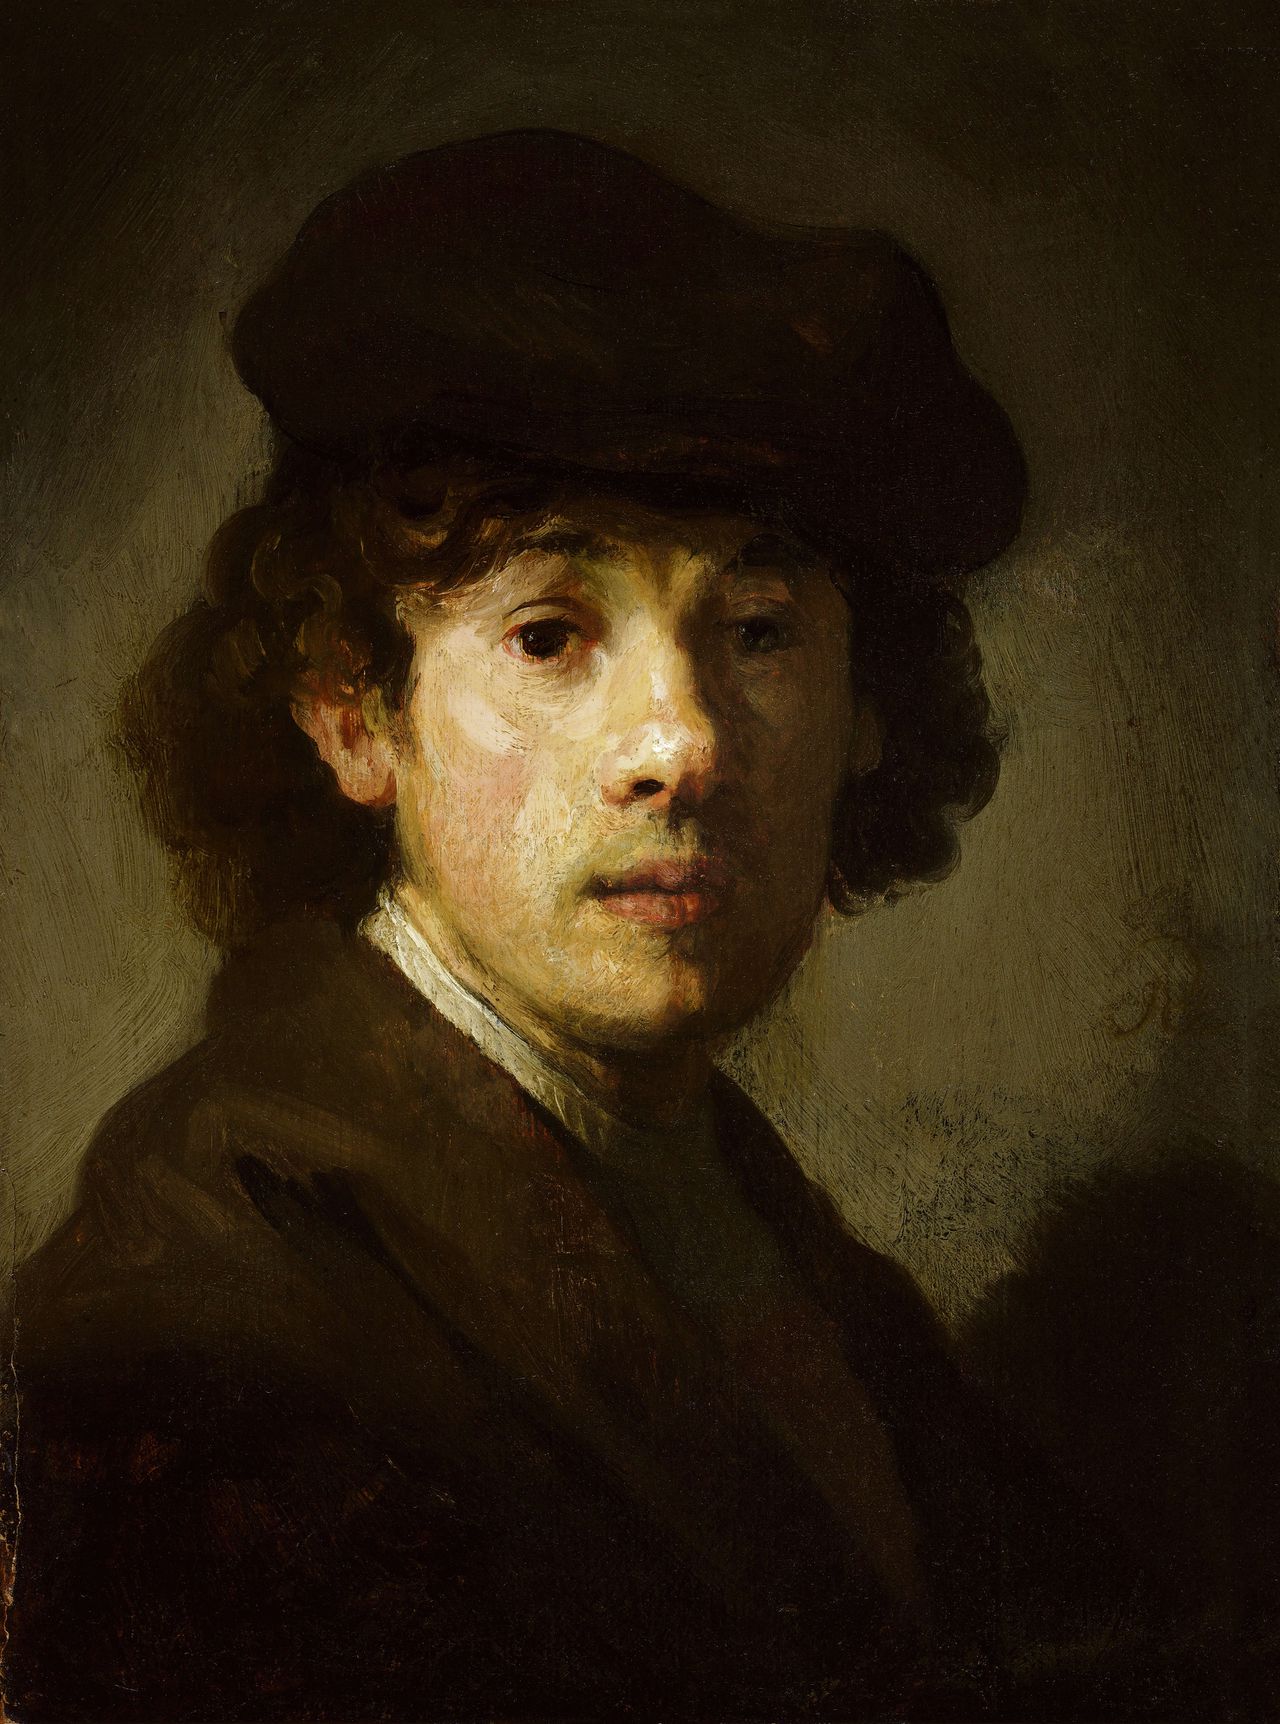 Zelfportret uit ca. 1630. Aanvankelijk afgeschreven, nu na gebruik nieuwe technieken weer toegeschreven aan Rembrandt